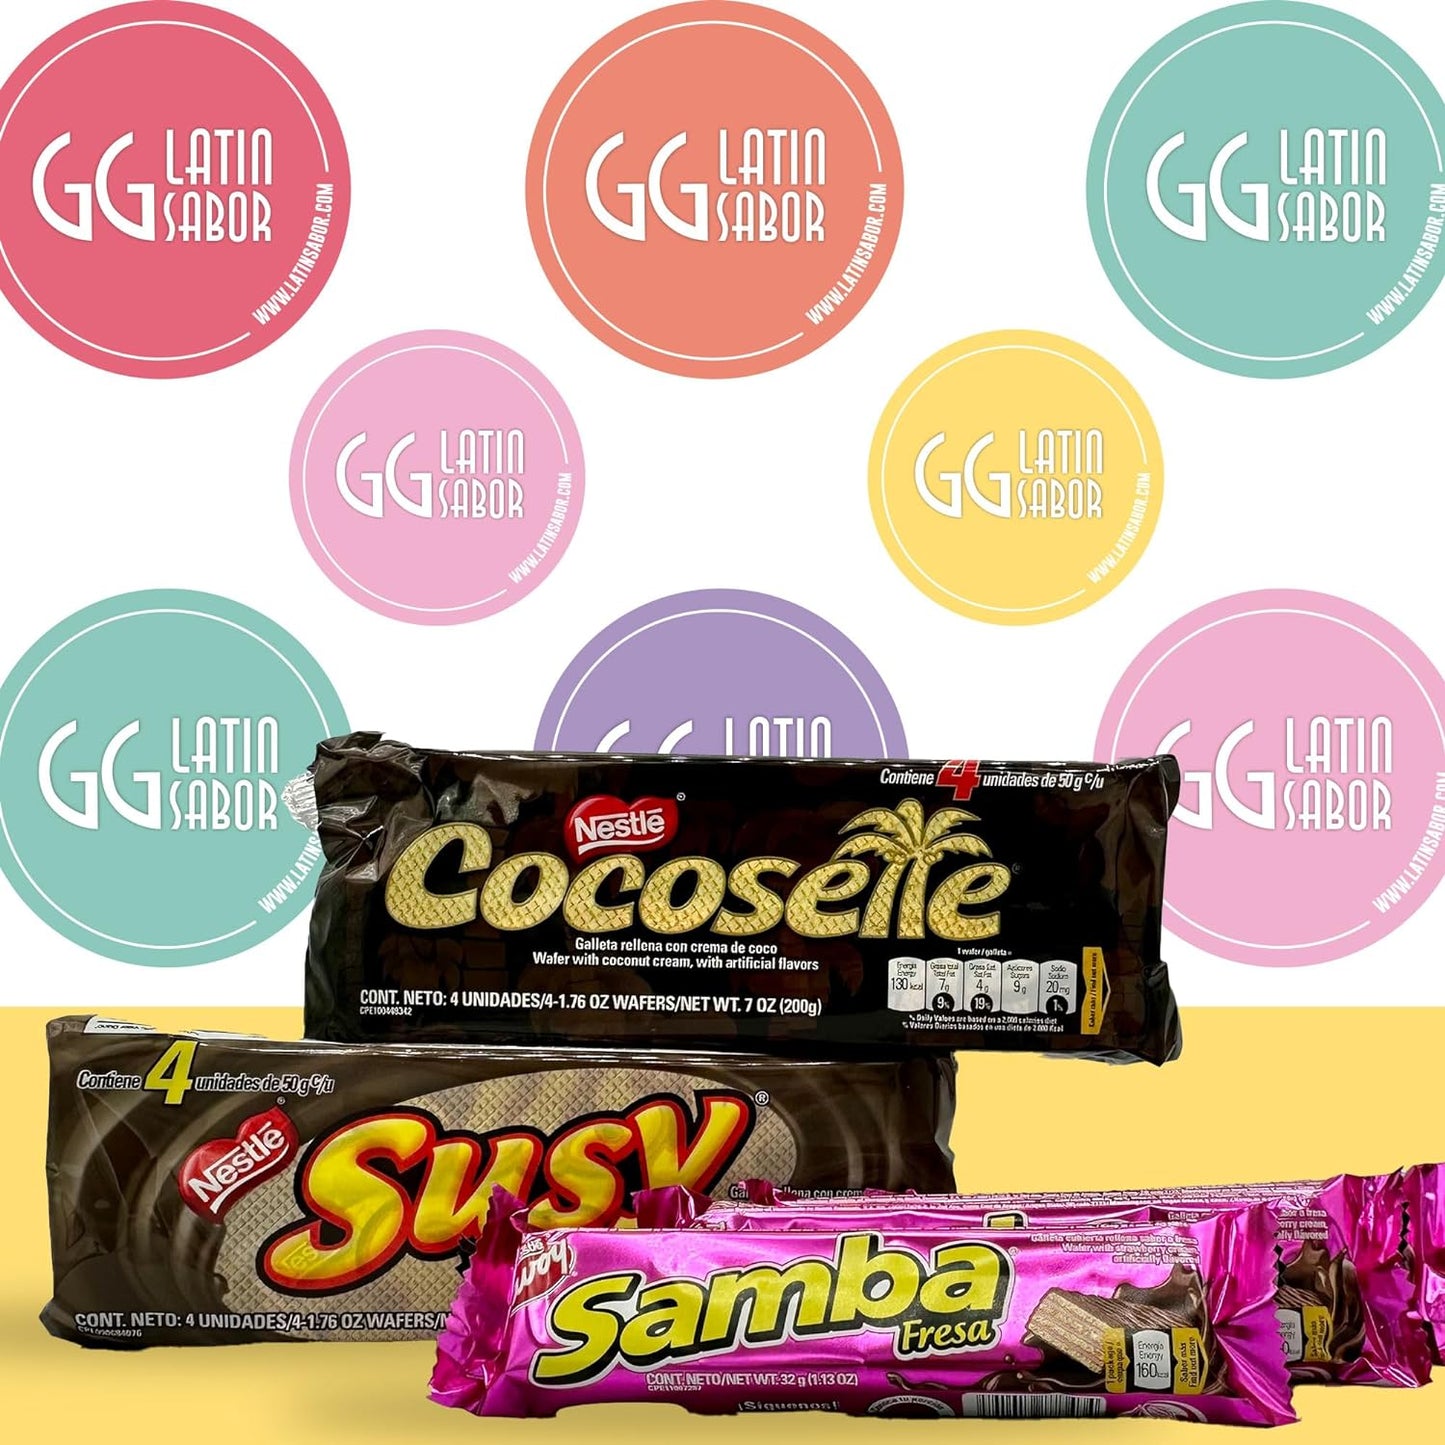 Galletas Wafer Surtidas Venezolanas GG Latin Sabor: Cocosette, Susy, Samba